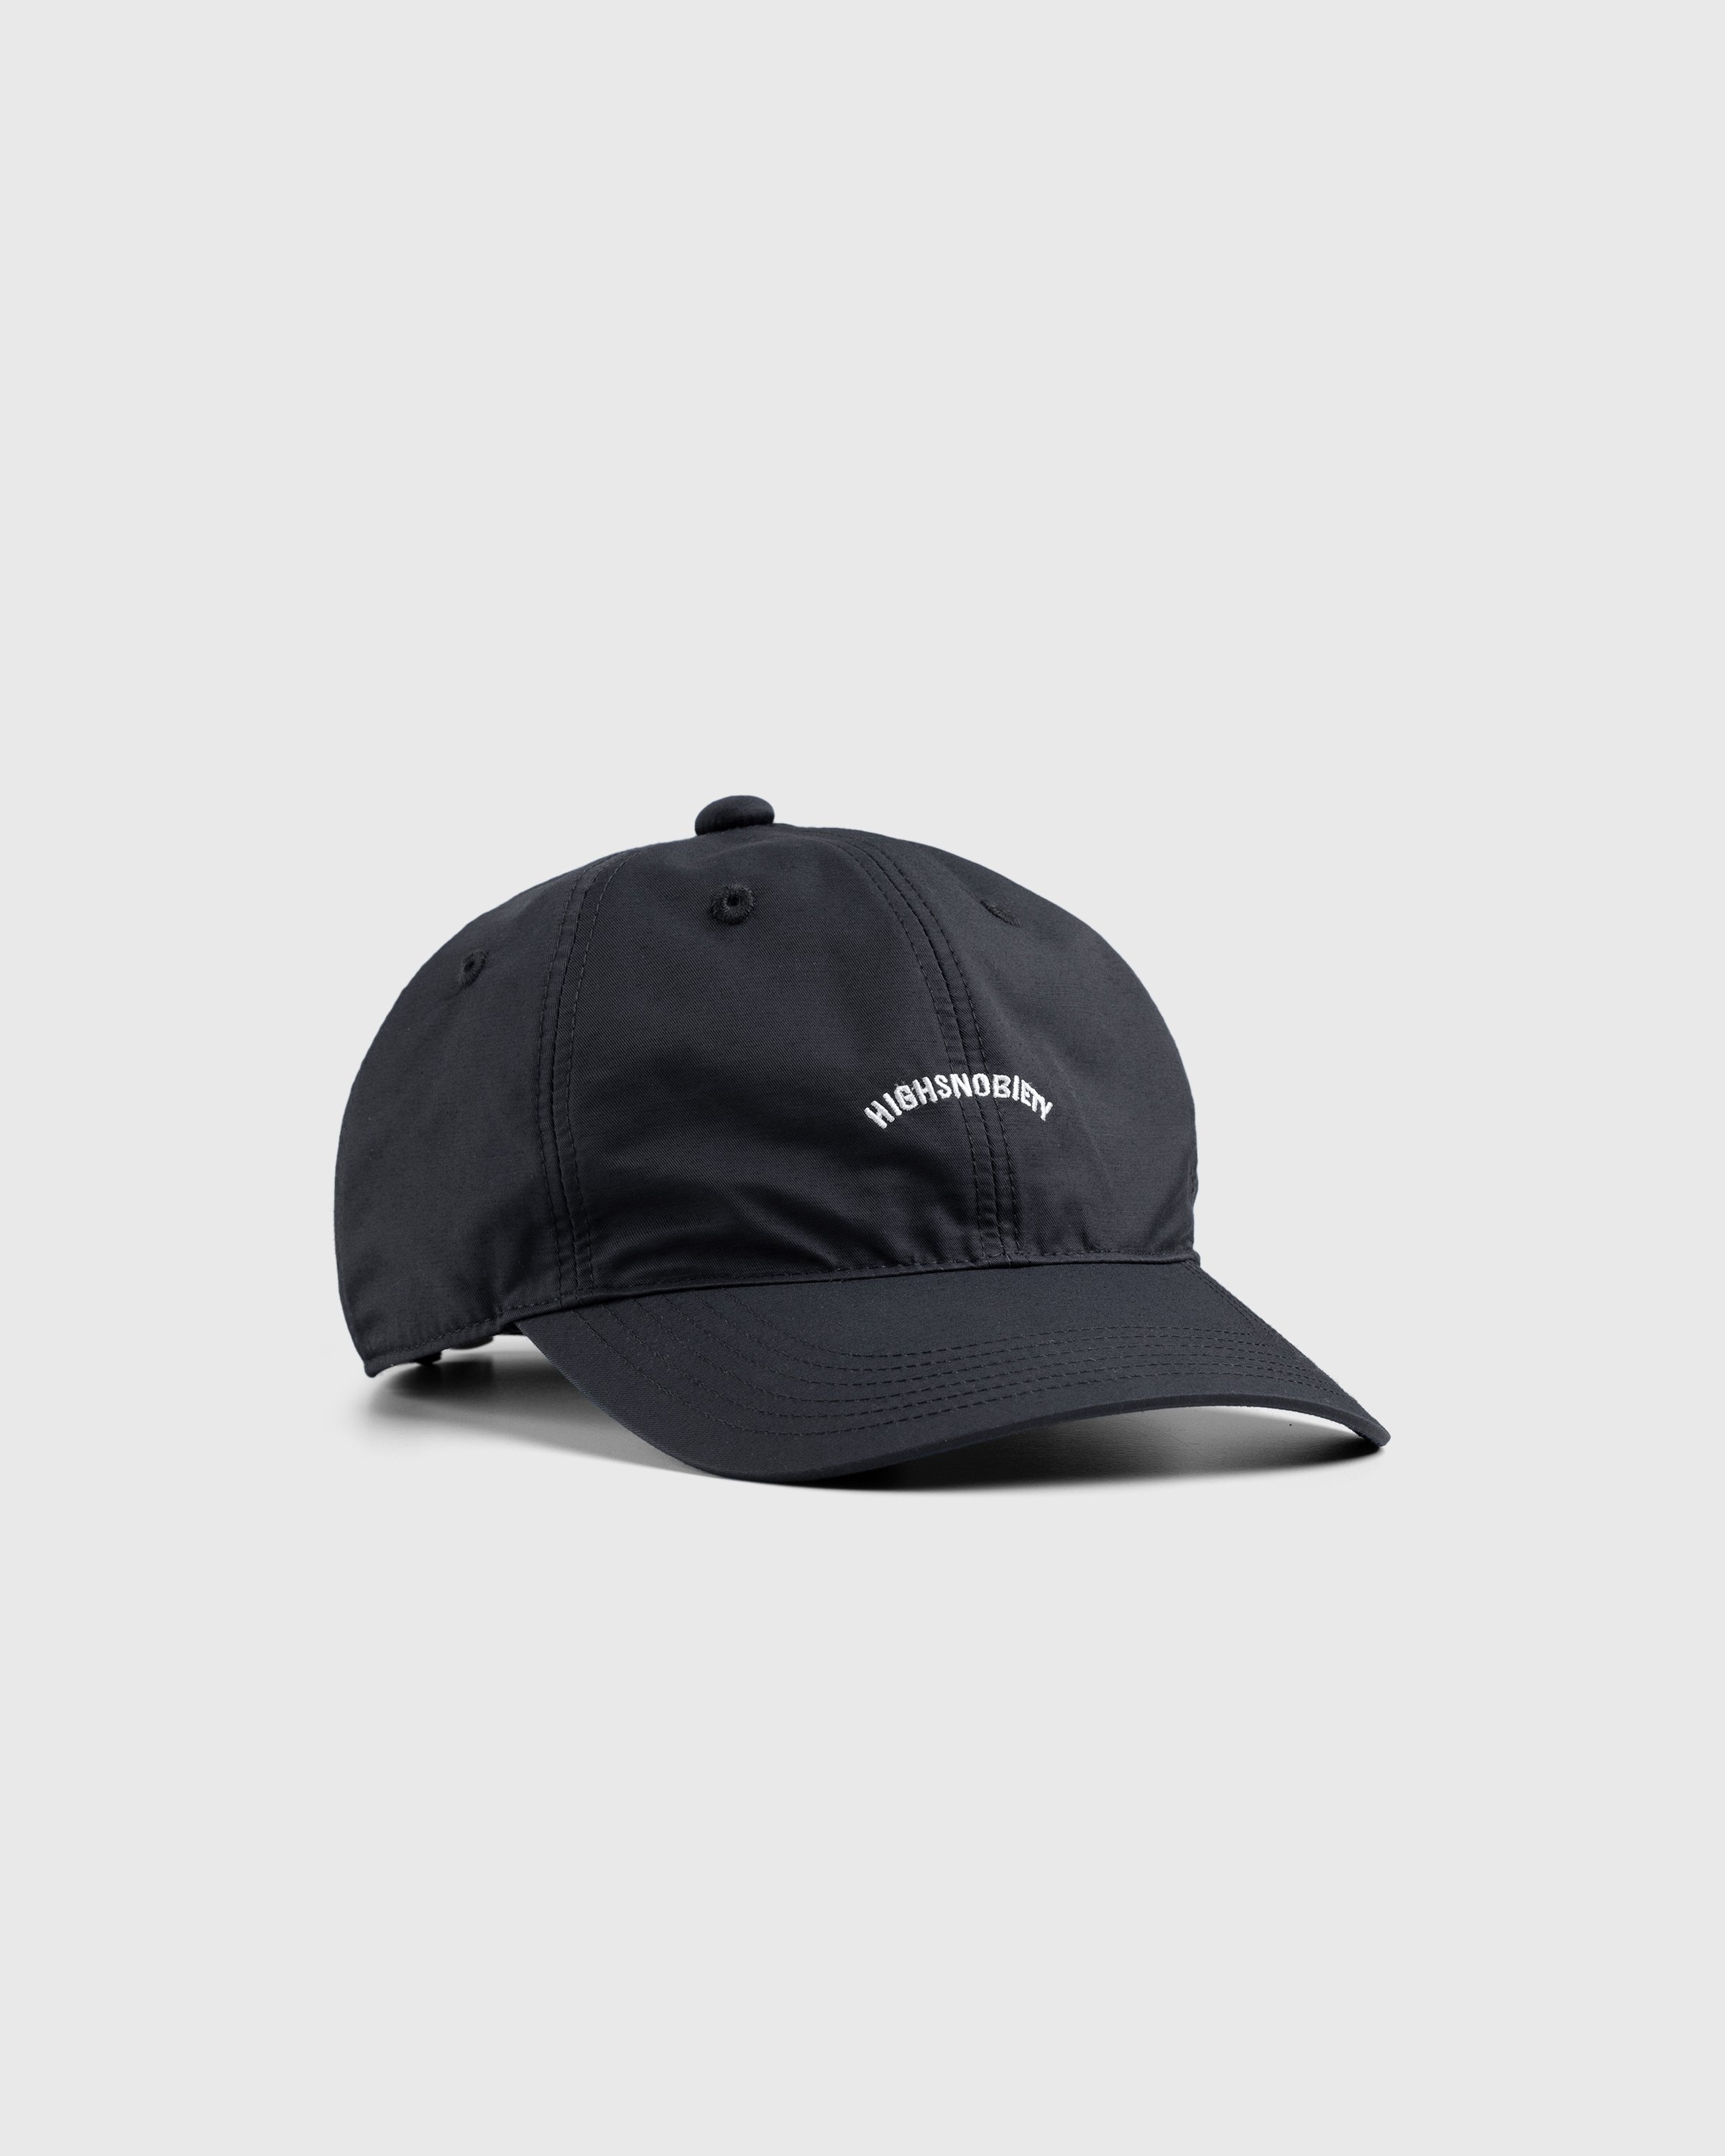 Highsnobiety – Brushed Nylon Logo Cap Black - Hats - Black - Image 1